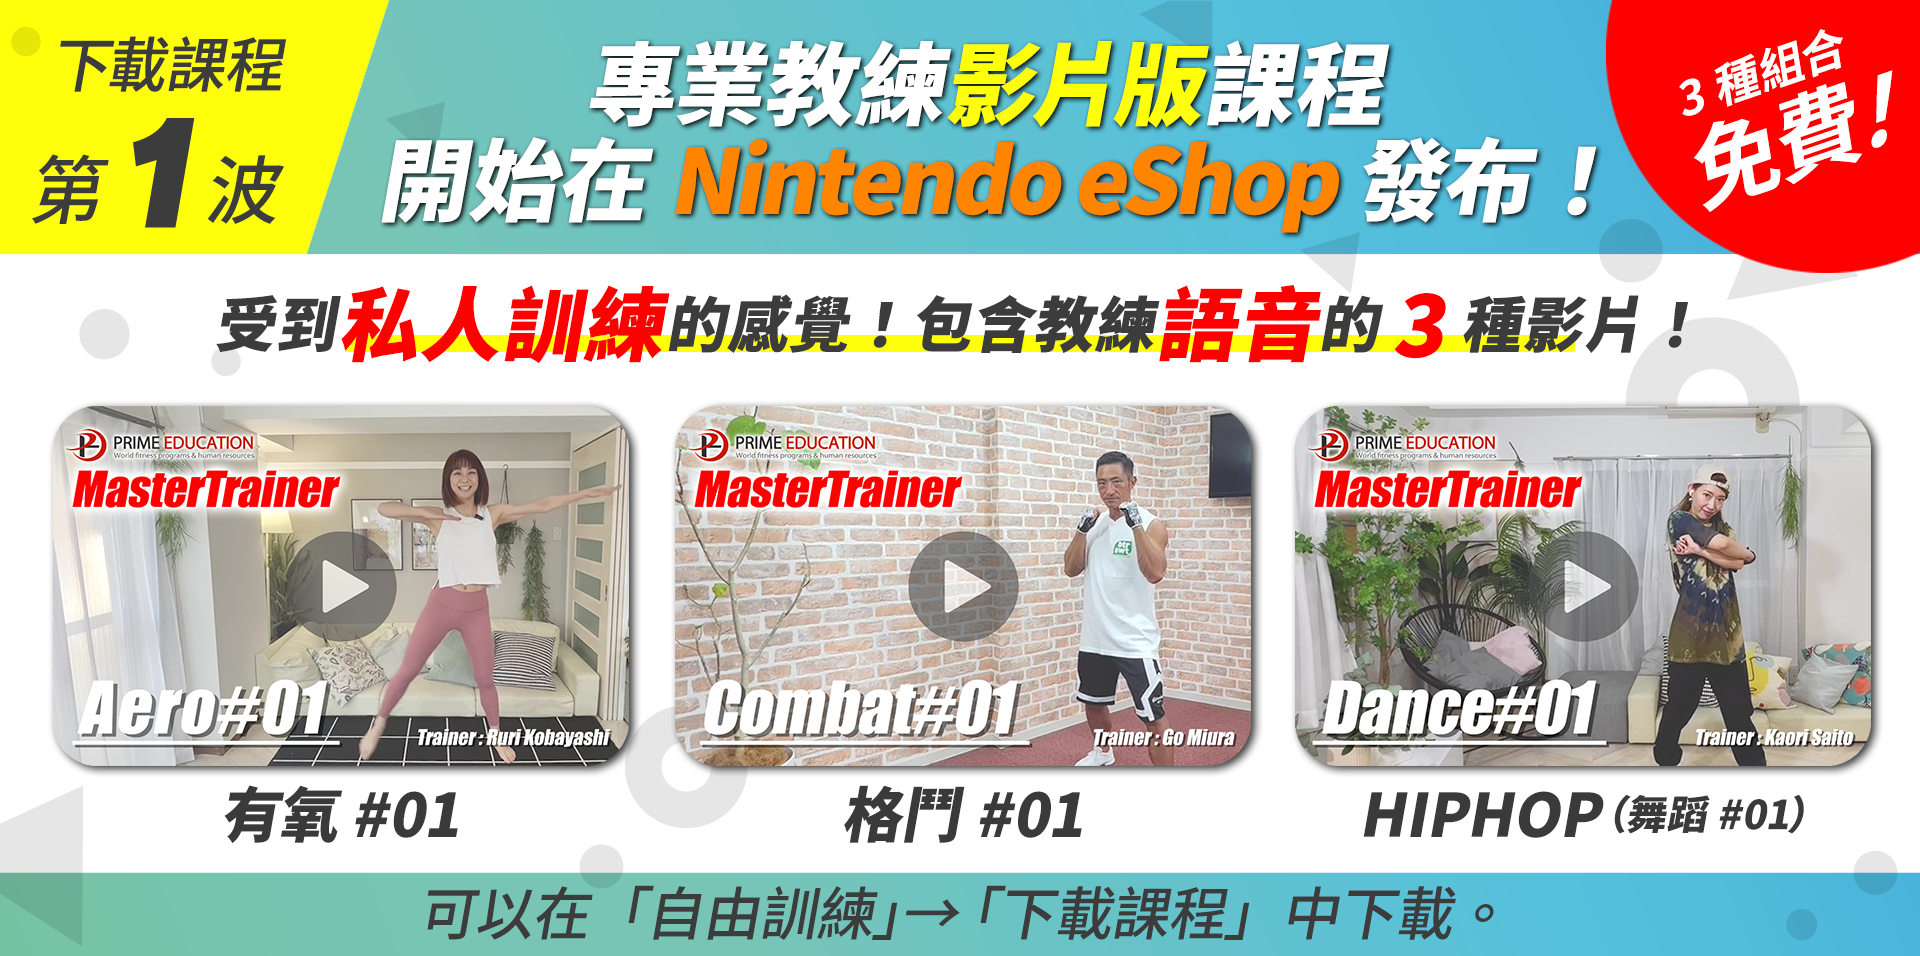 《吾家健身趣》专业教练影片版 DLC 开放下载 本篇数位版限期促销中